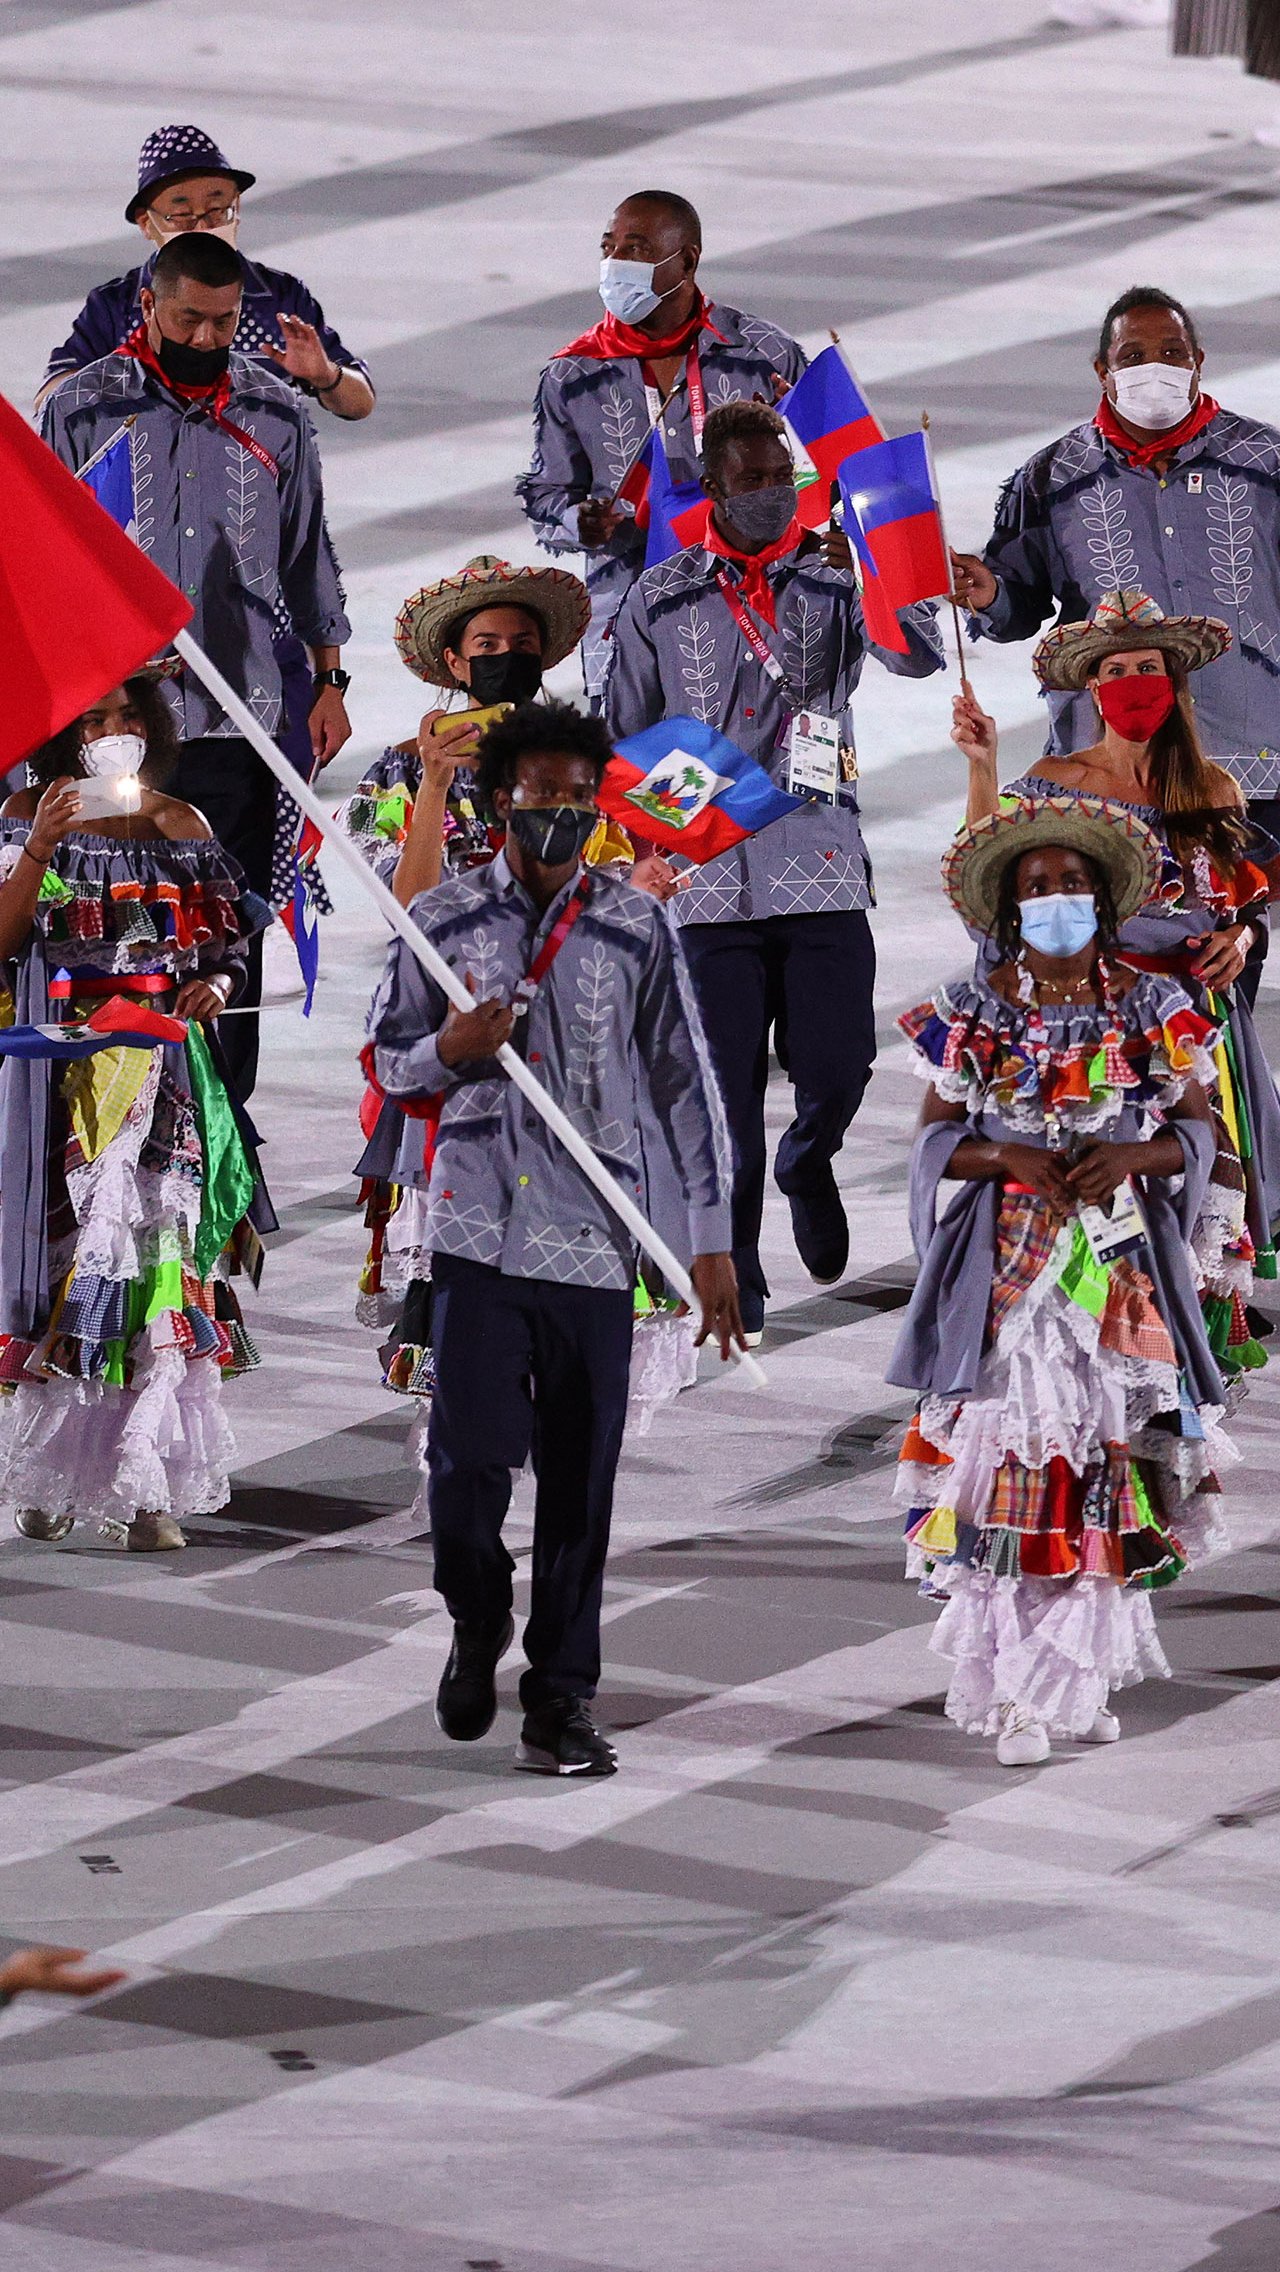 В экзотических костюмах пришли спортсмены из сборной Гаити. Девушки были одеты в цветастые сарафаны и яркие панамы, а мужчины — в синие рубашки с национальным узором.